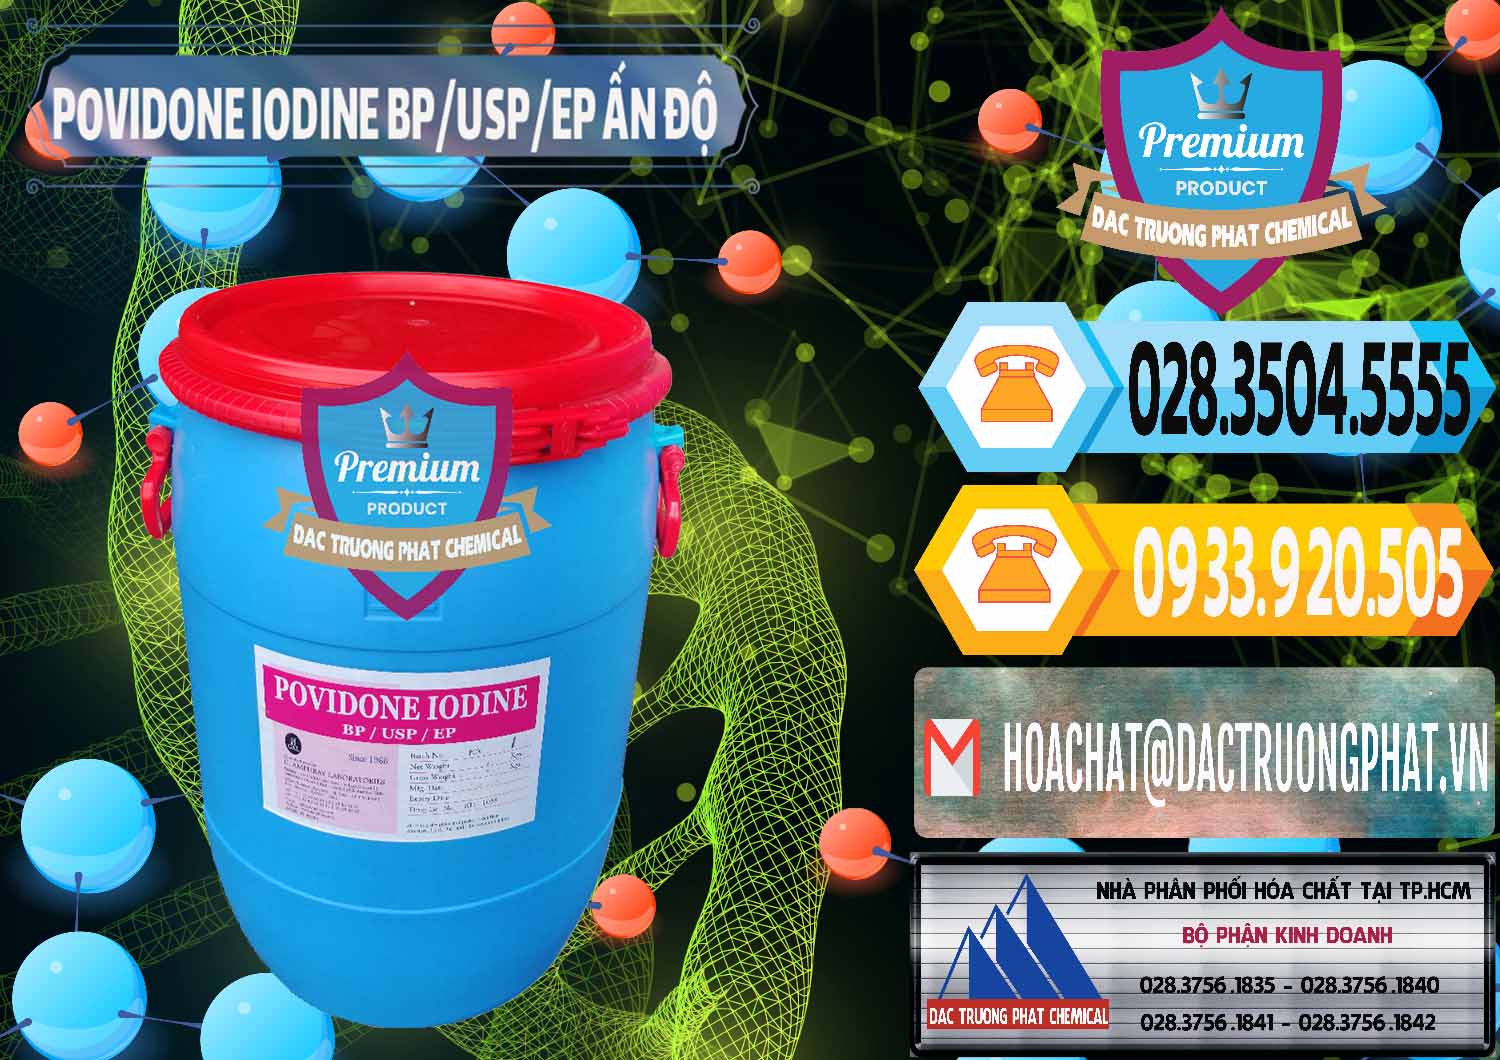 Nơi bán và cung cấp Povidone Iodine BP USP EP Ấn Độ India - 0318 - Chuyên kinh doanh - phân phối hóa chất tại TP.HCM - hoachattayrua.net